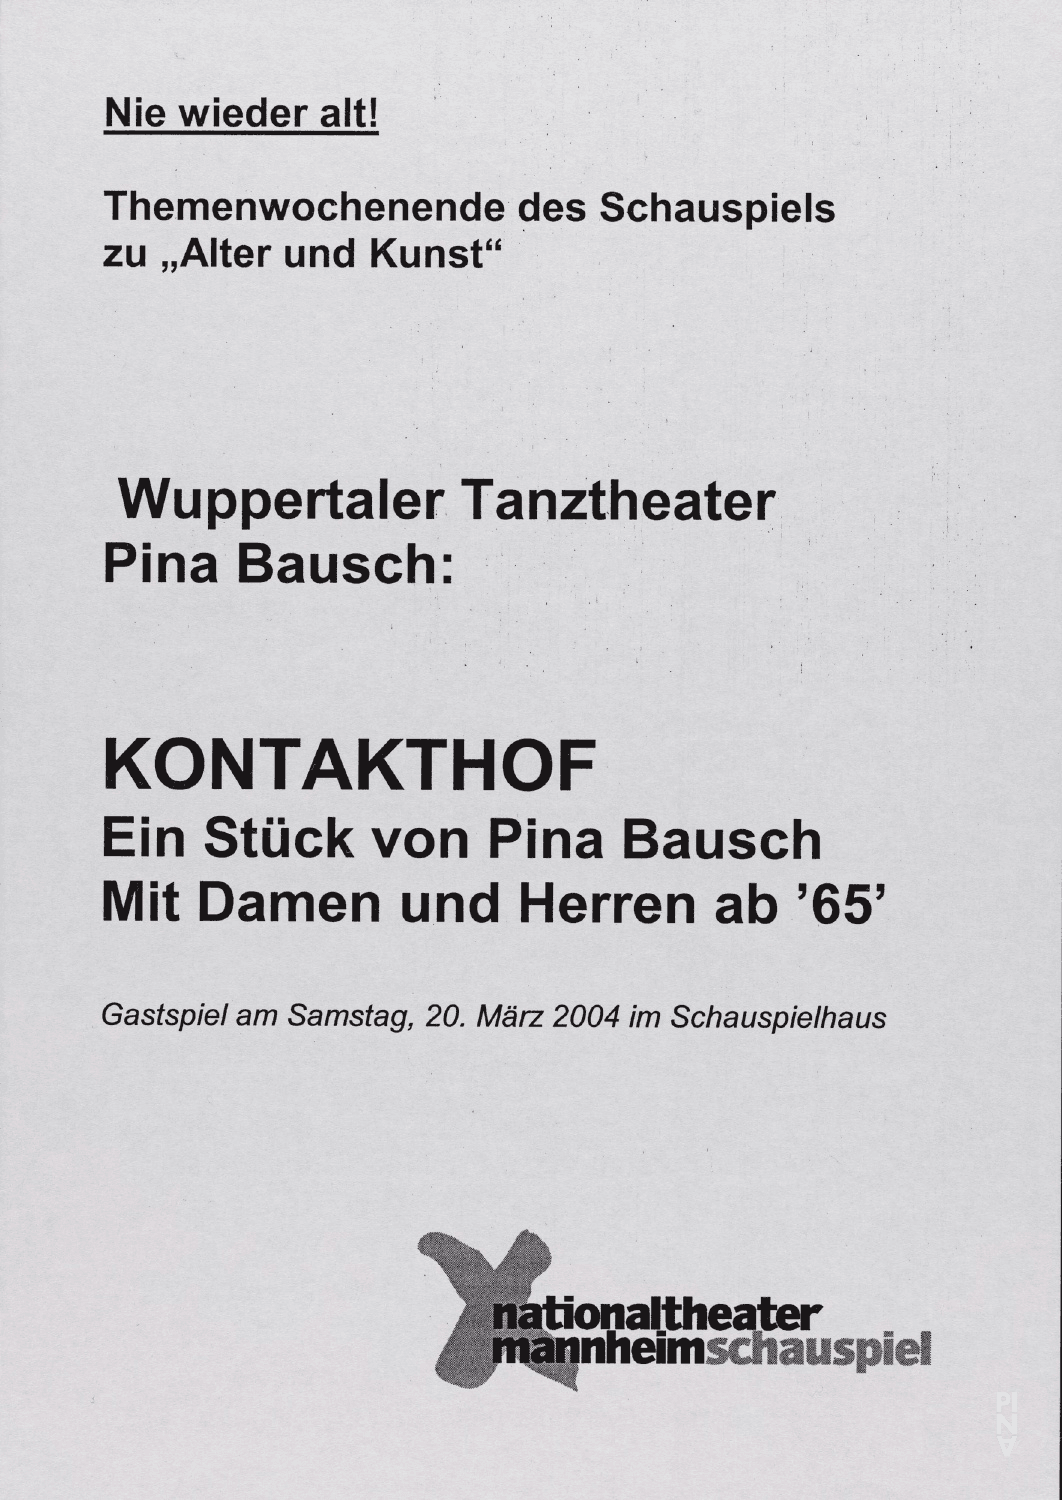 Evening leaflet for “Kontakthof. With Ladies and Gentlemen over 65” by Pina Bausch with Kontakthof-Ensemble Damen und Herren ab ´65 in in Mannheim, March 20, 2004